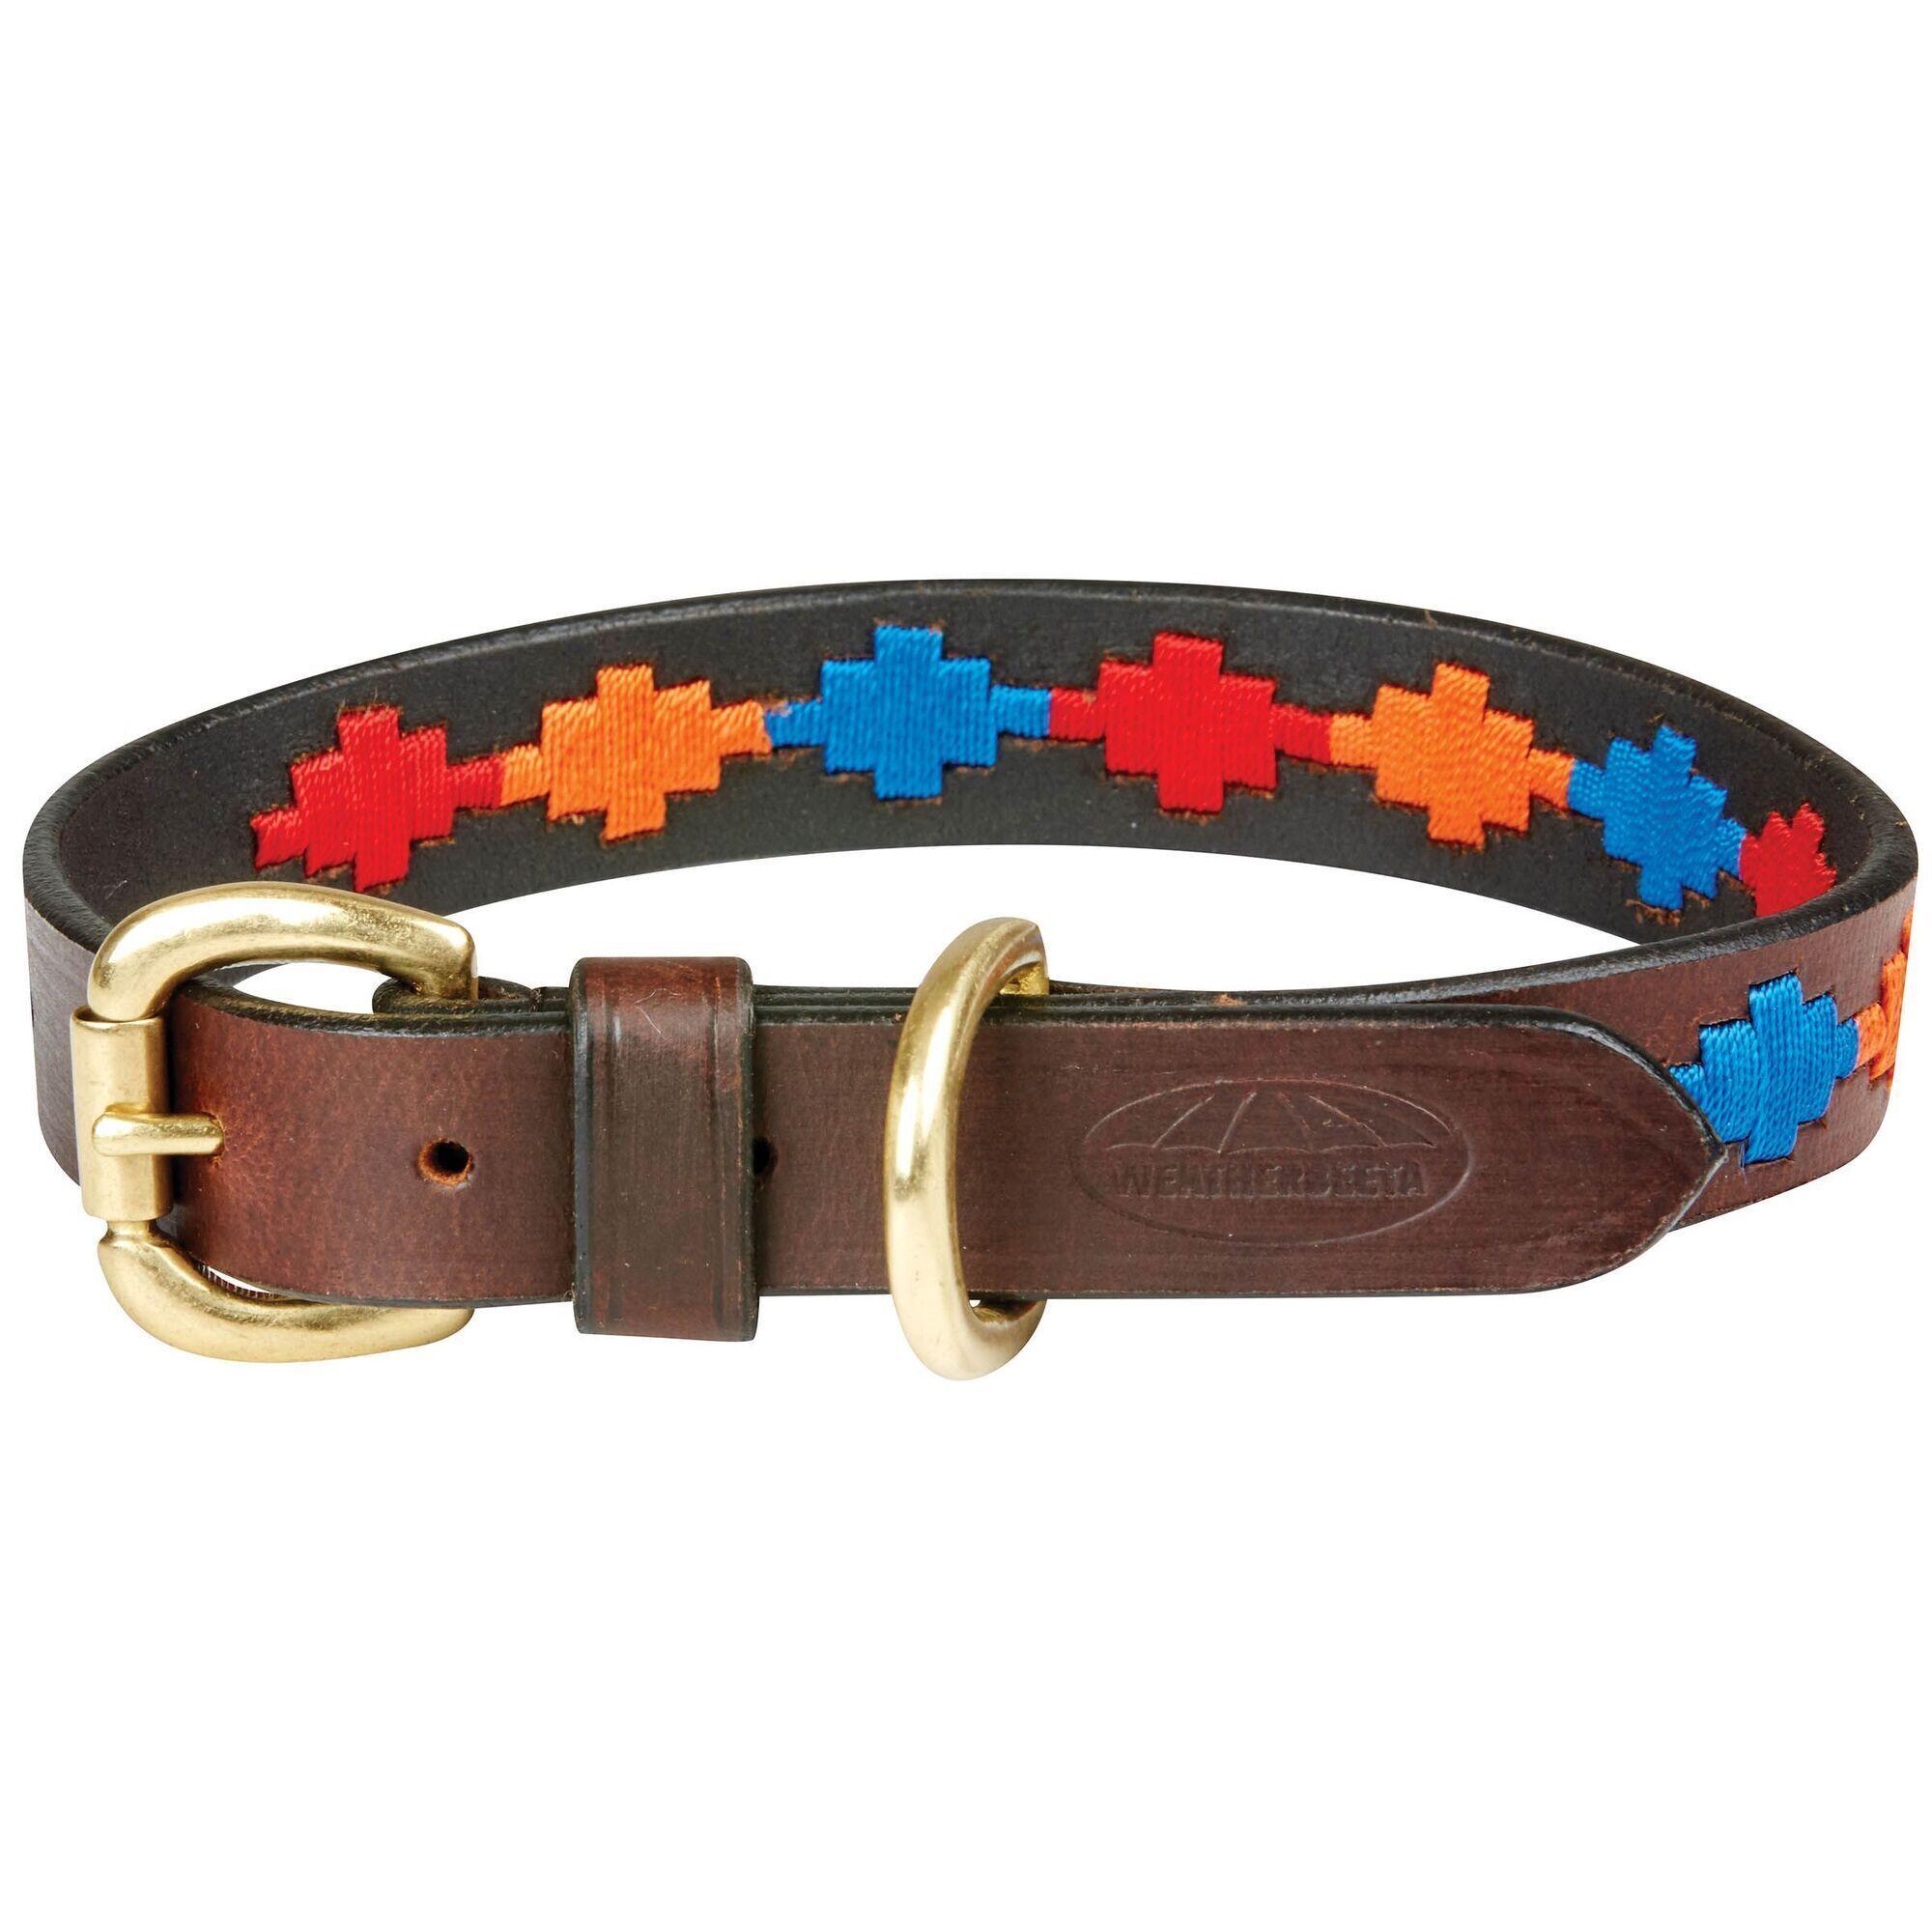 WEATHERBEETA Polo Leather Dog Collar (Brown/Red/Orange/Blue)